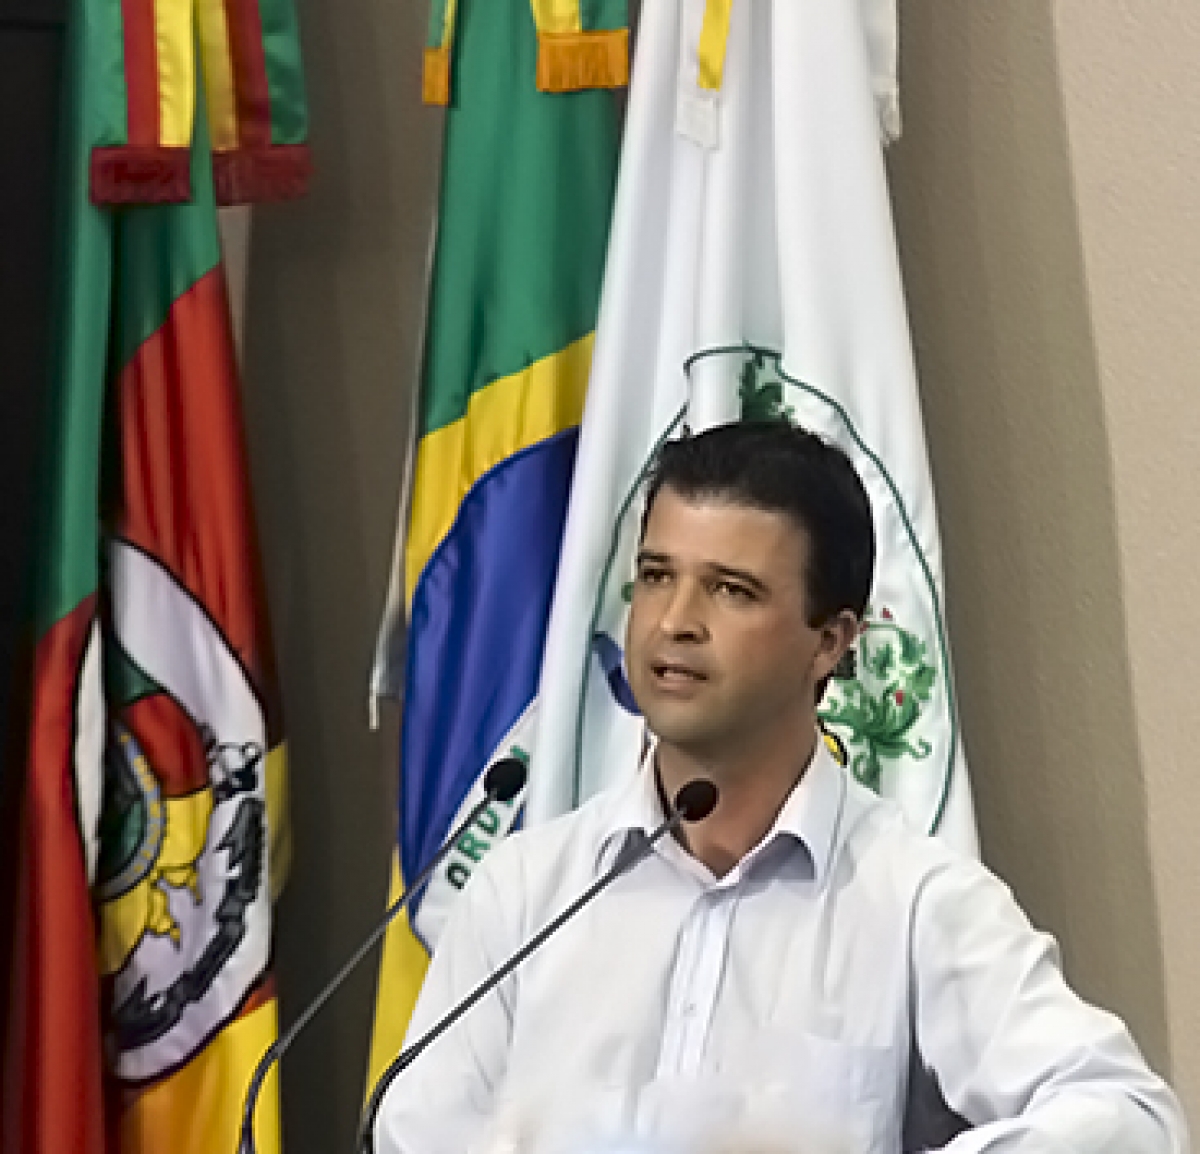 Vereador Neri, O Carteiro visita comunidades dos bairros Bela Vista, Planalto, Rio Branco e dos loteamentos Rubiano e Bortolini